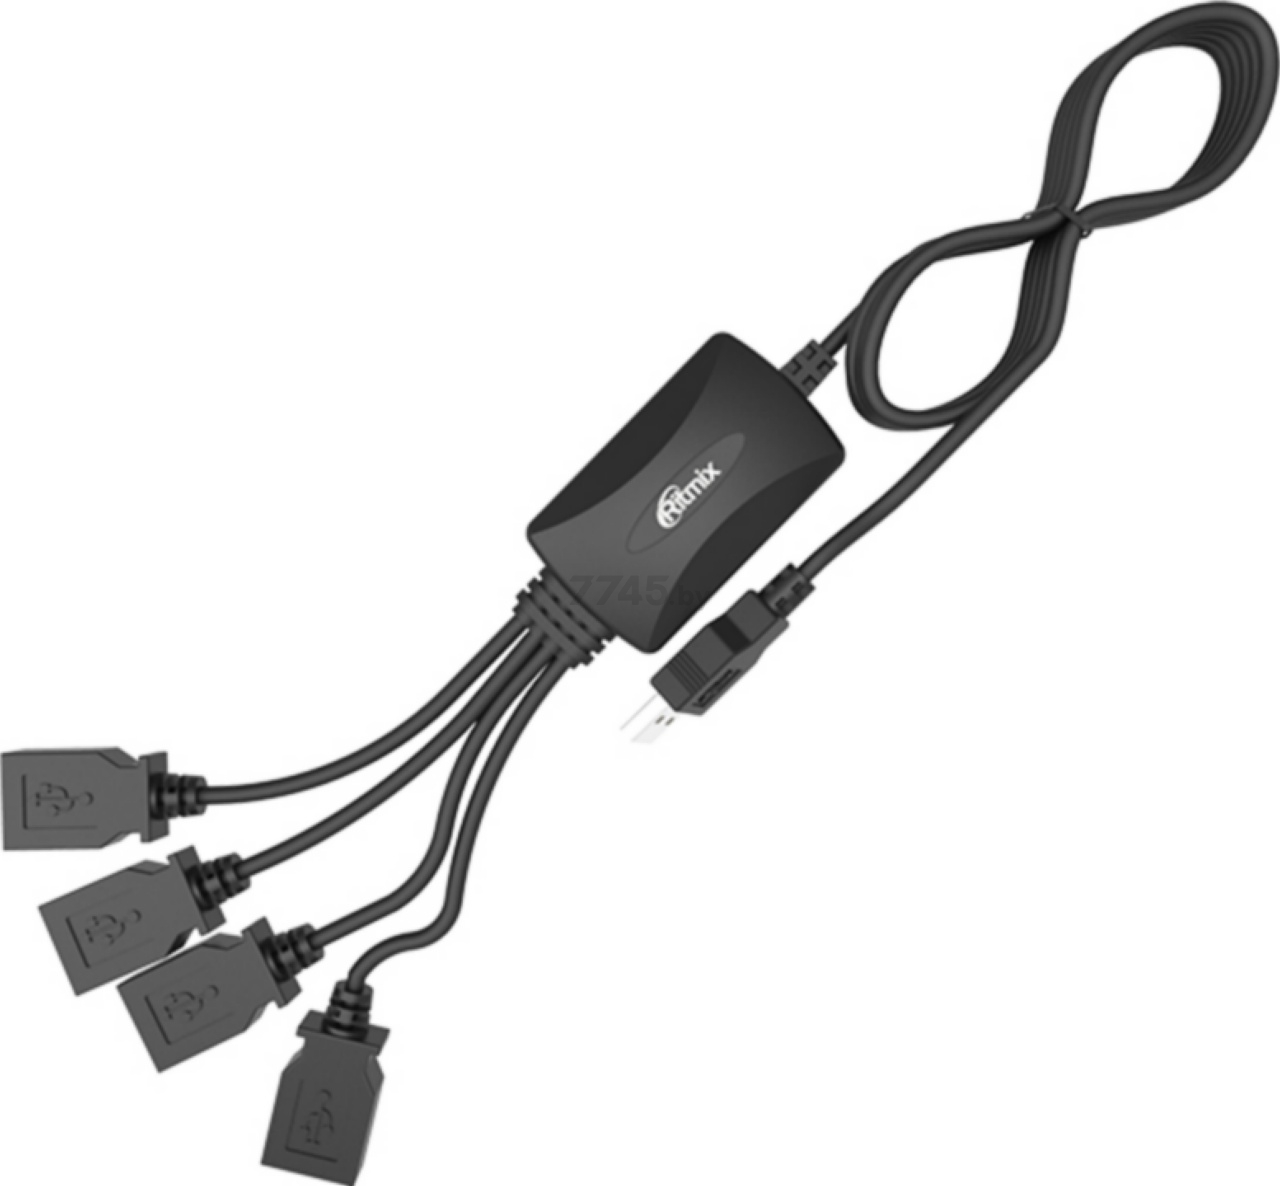 USB-хаб RITMIX CR-2405 - Фото 2